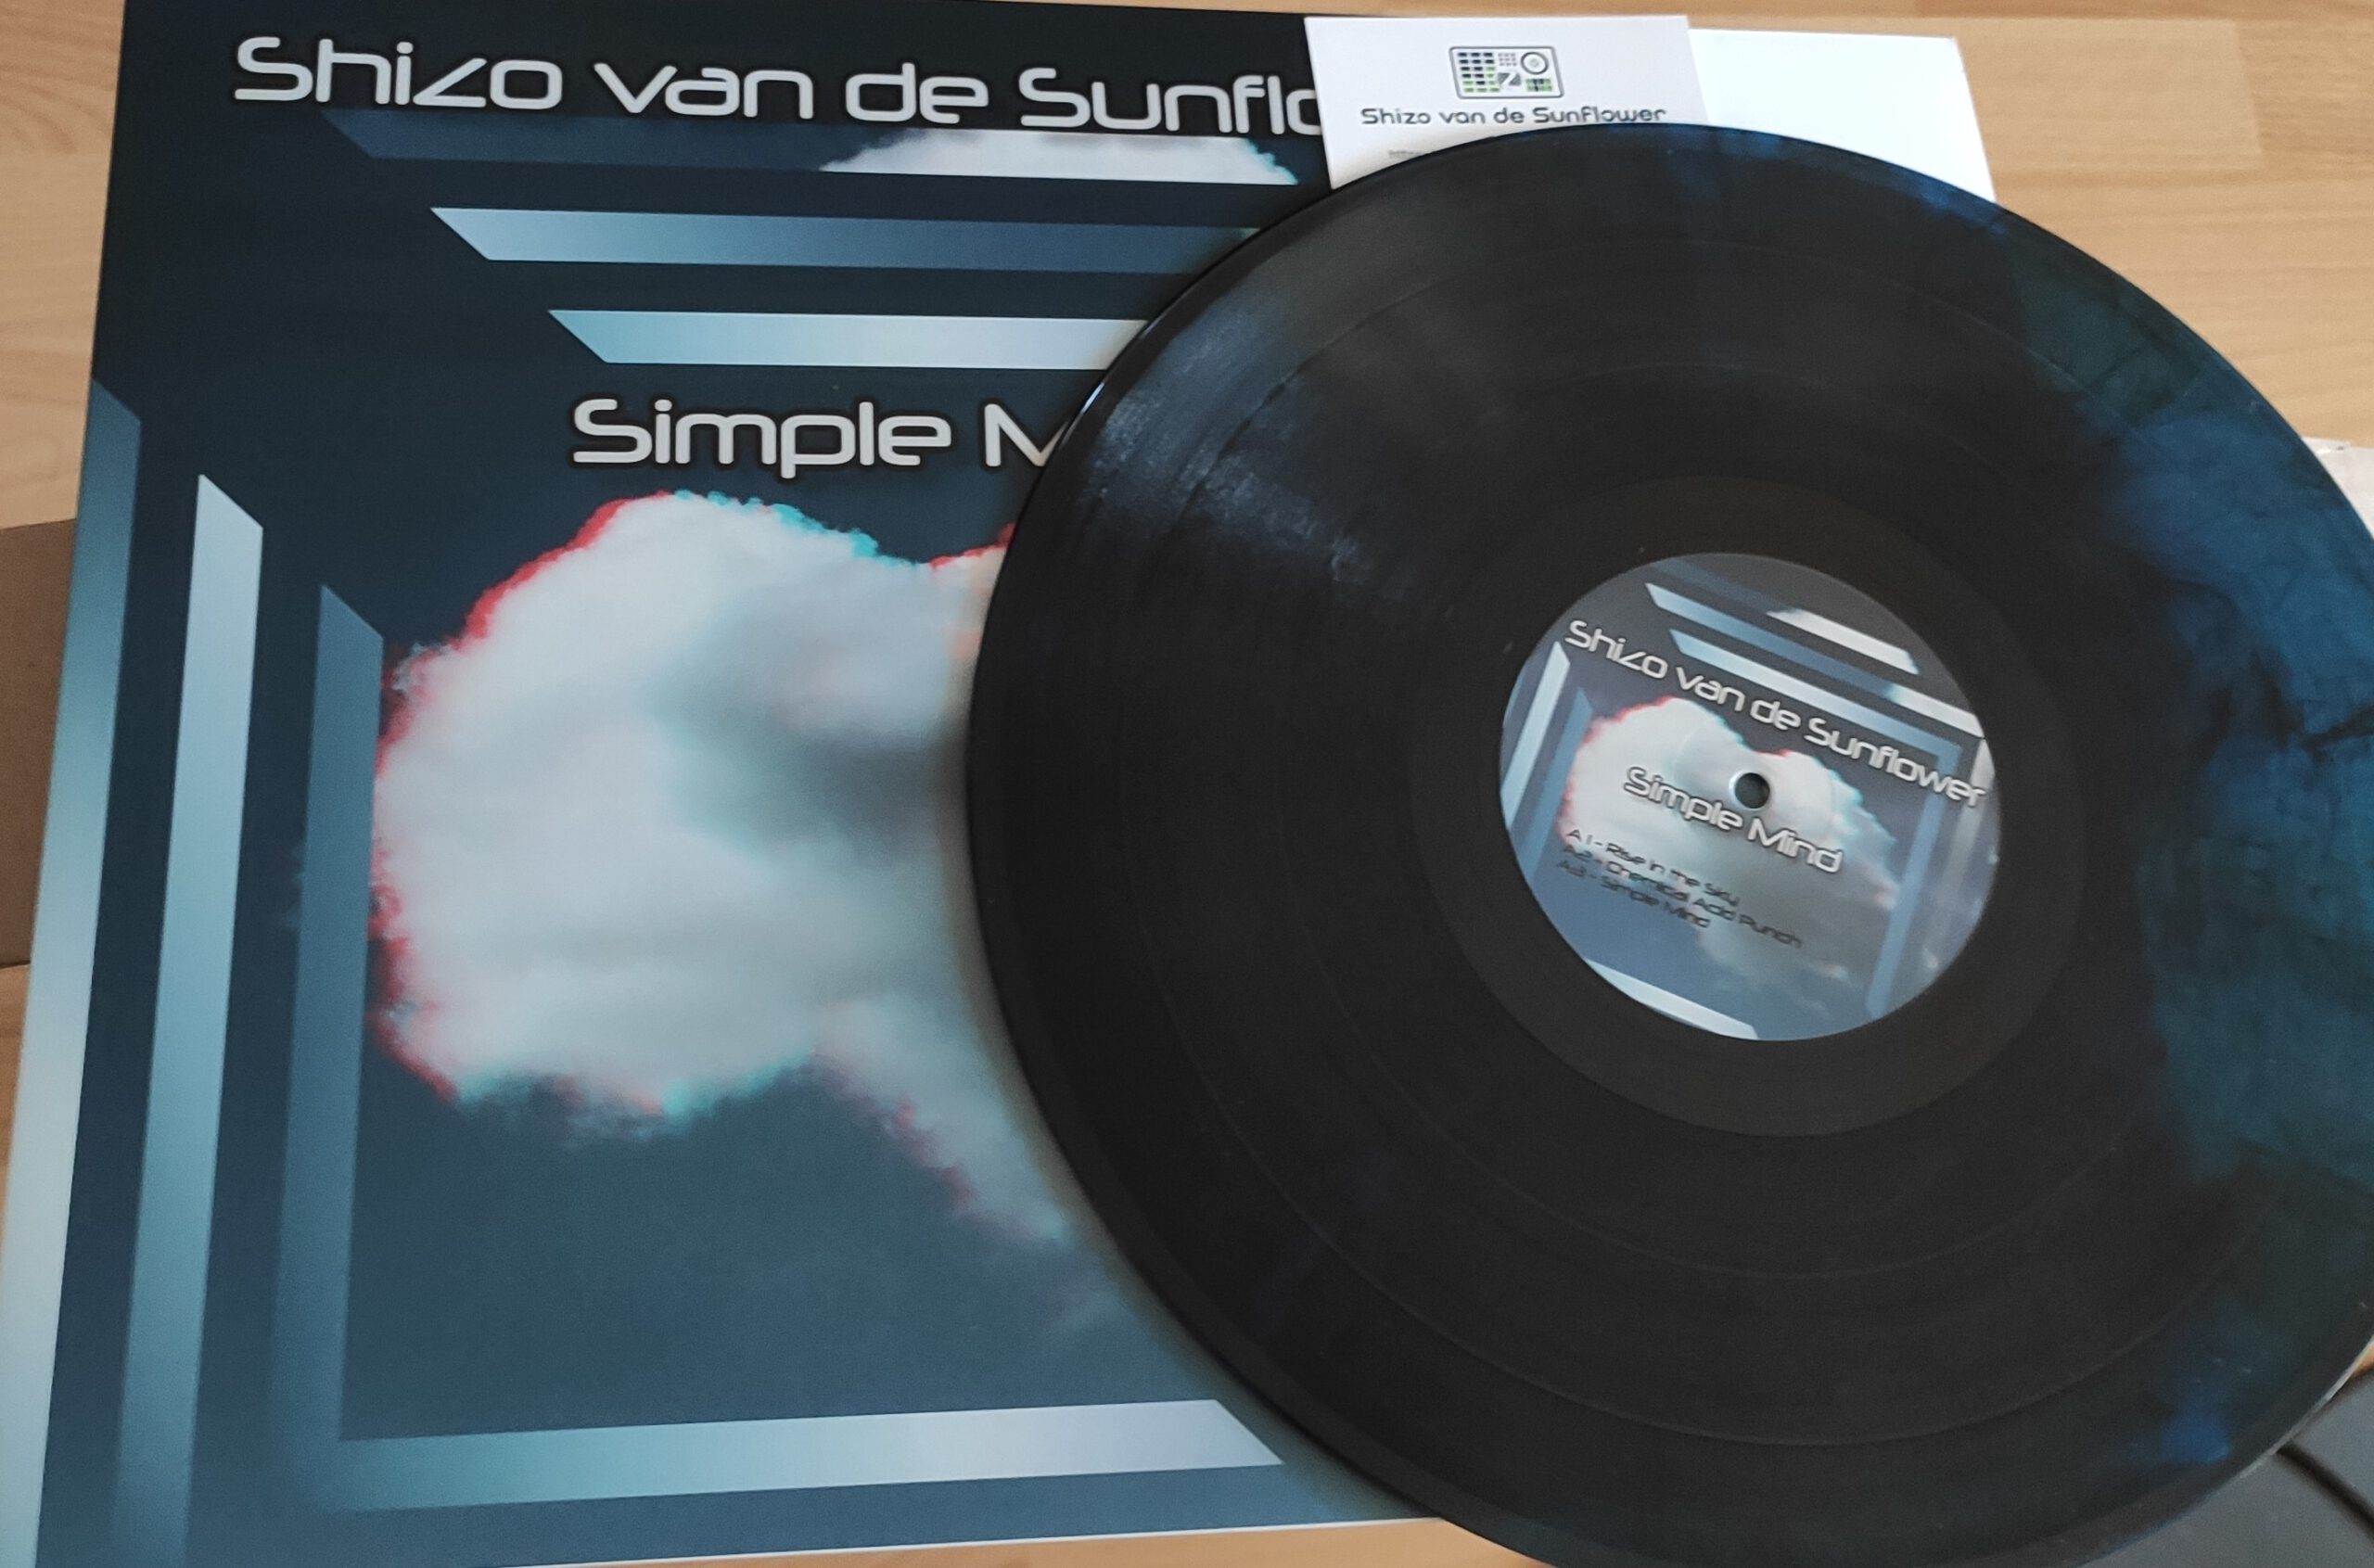 Das Shizo van de Sunflower Album „Simple Mind“ gibt es jetzt auf Vinyl